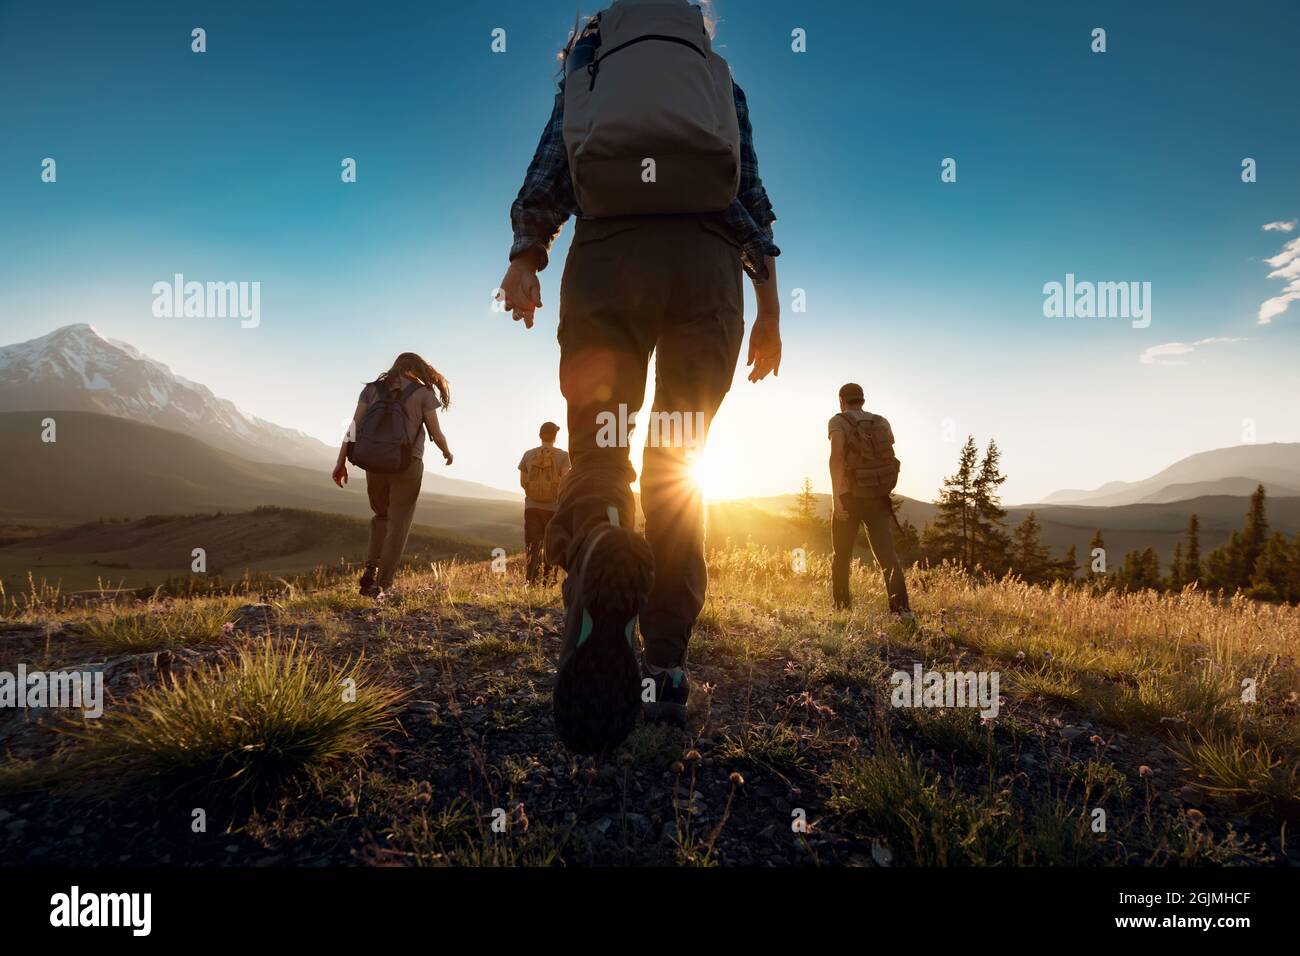 Un groupe de sportifs se promène dans les montagnes au coucher du soleil avec des sacs à dos. Montagnes de l'Altaï, Sibérie, Russie. Banque D'Images